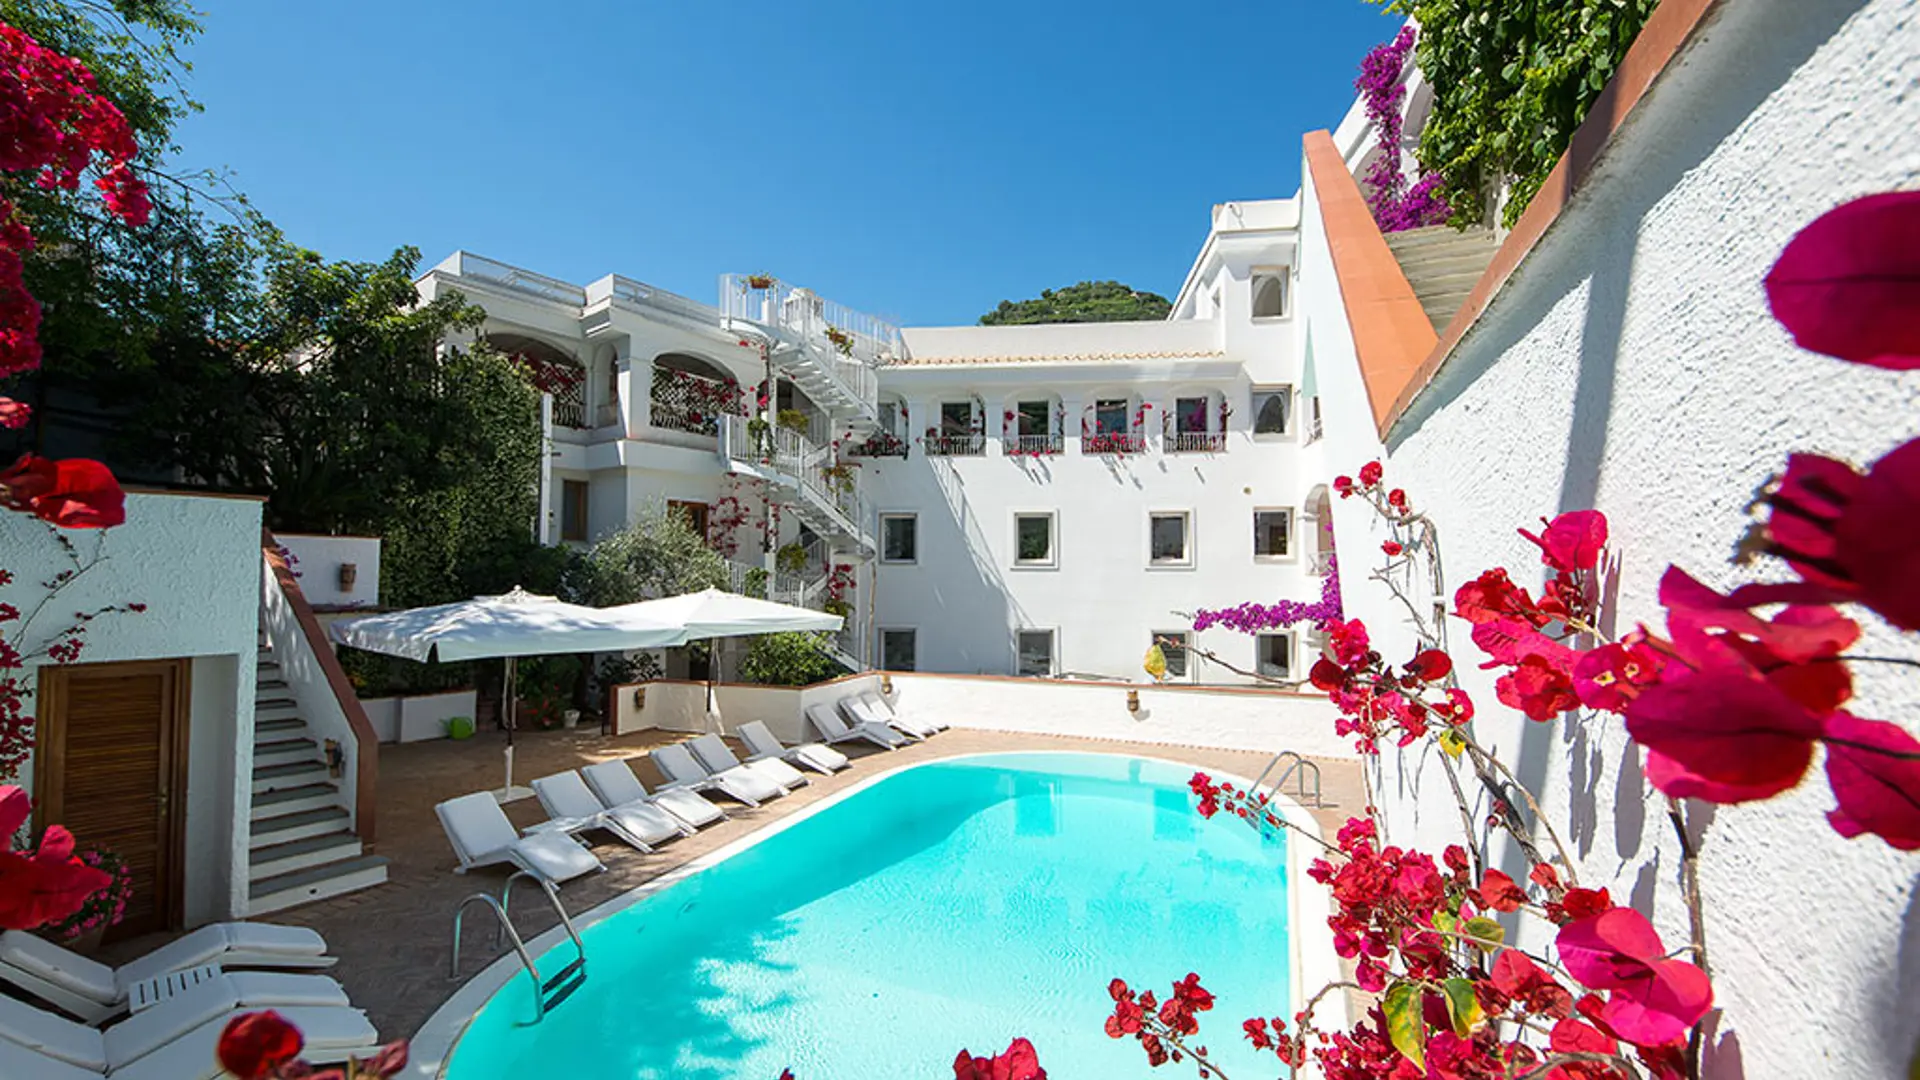 Hotel Villa Romana har en pool och ett fantastiskt läge mitt i Minori